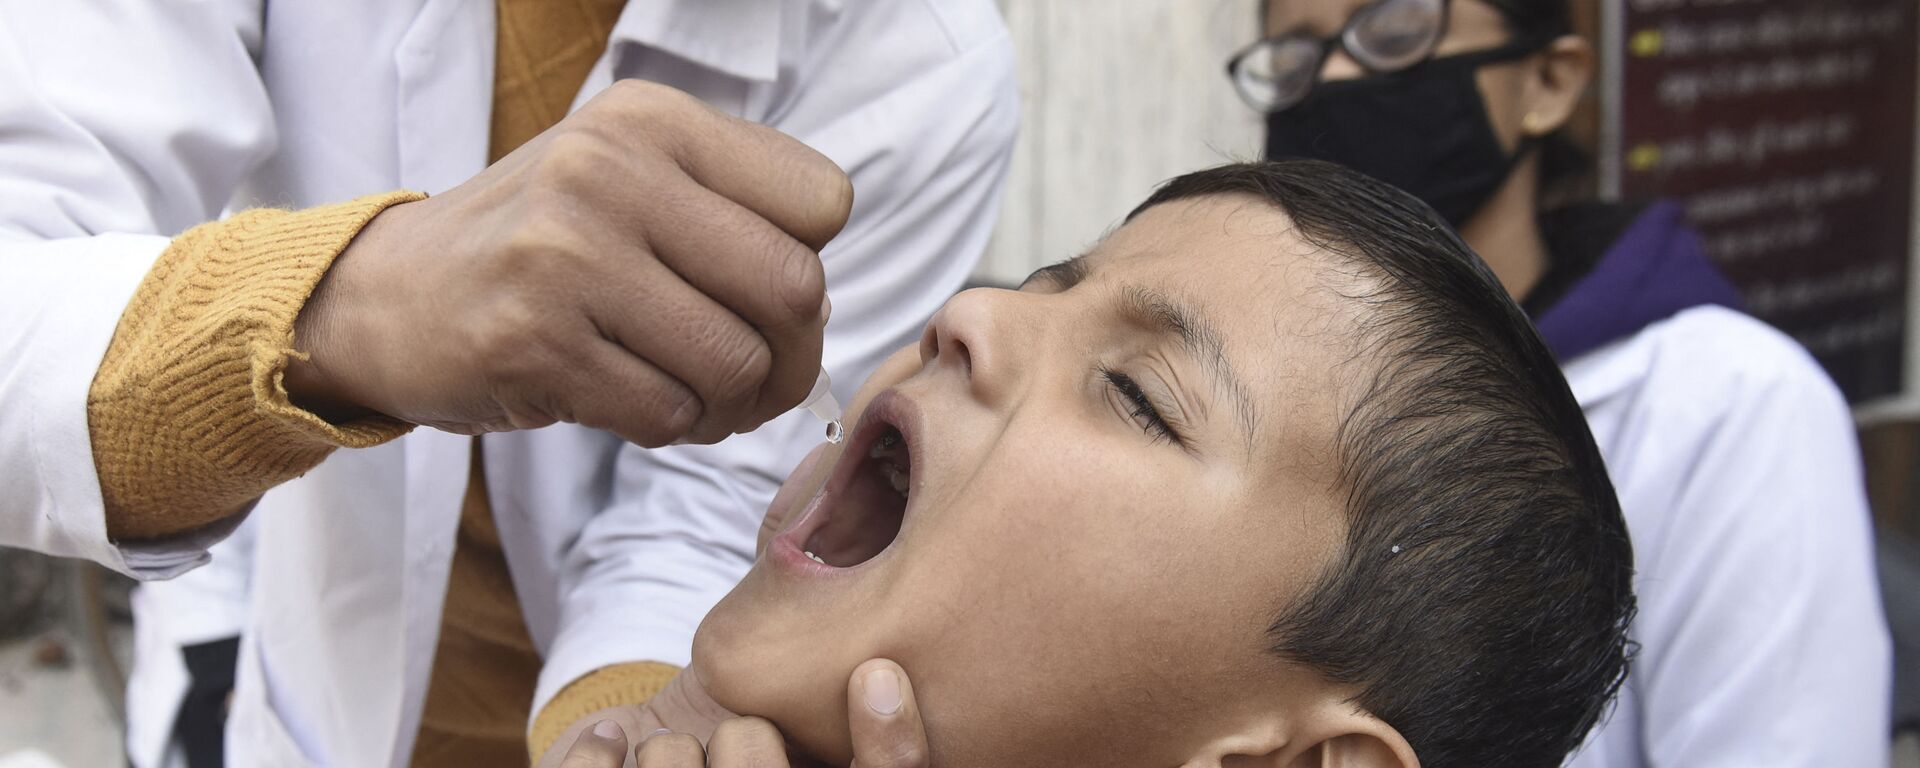 Медицинский работник вводит капли вакцины против полиомиелита ребенку - Sputnik Тоҷикистон, 1920, 24.05.2021